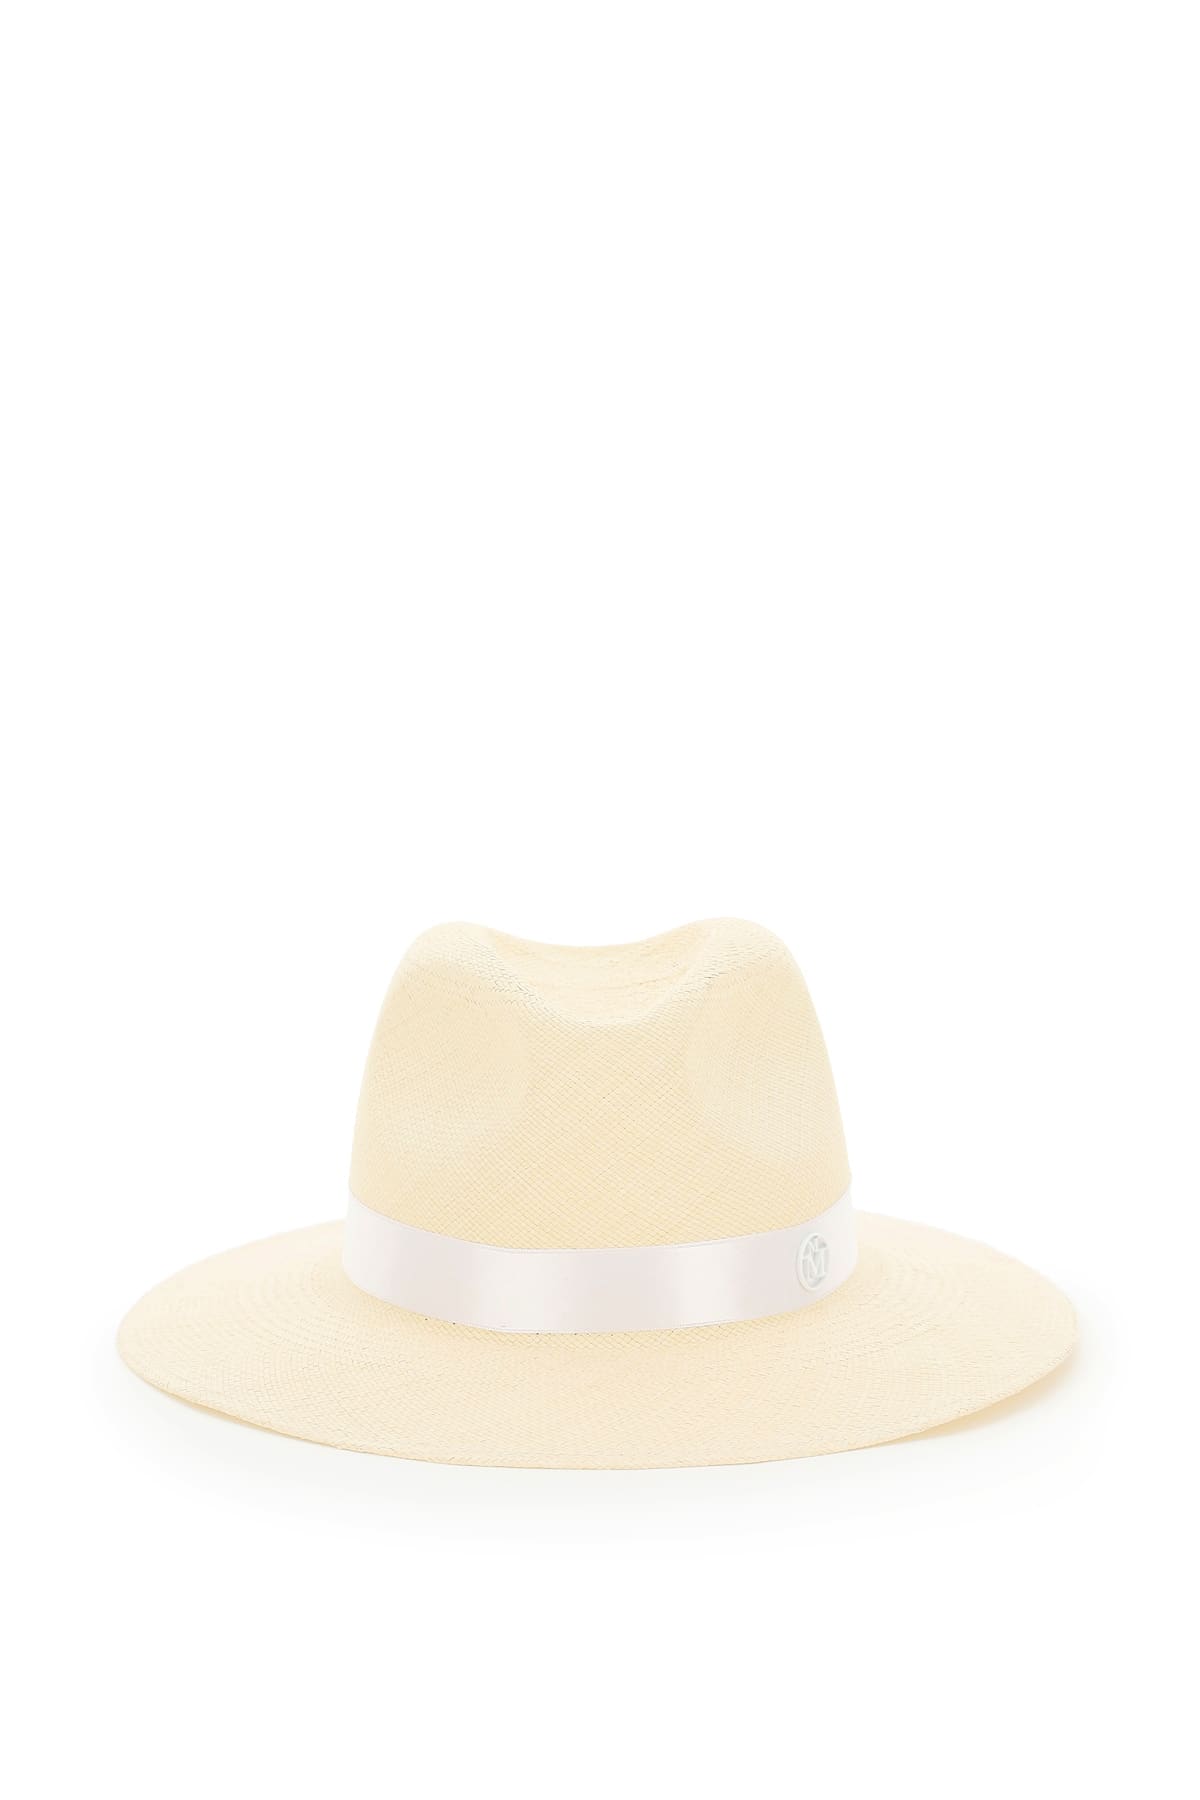 Maison Michel Henrietta Straw Fedora Hat With Pearls